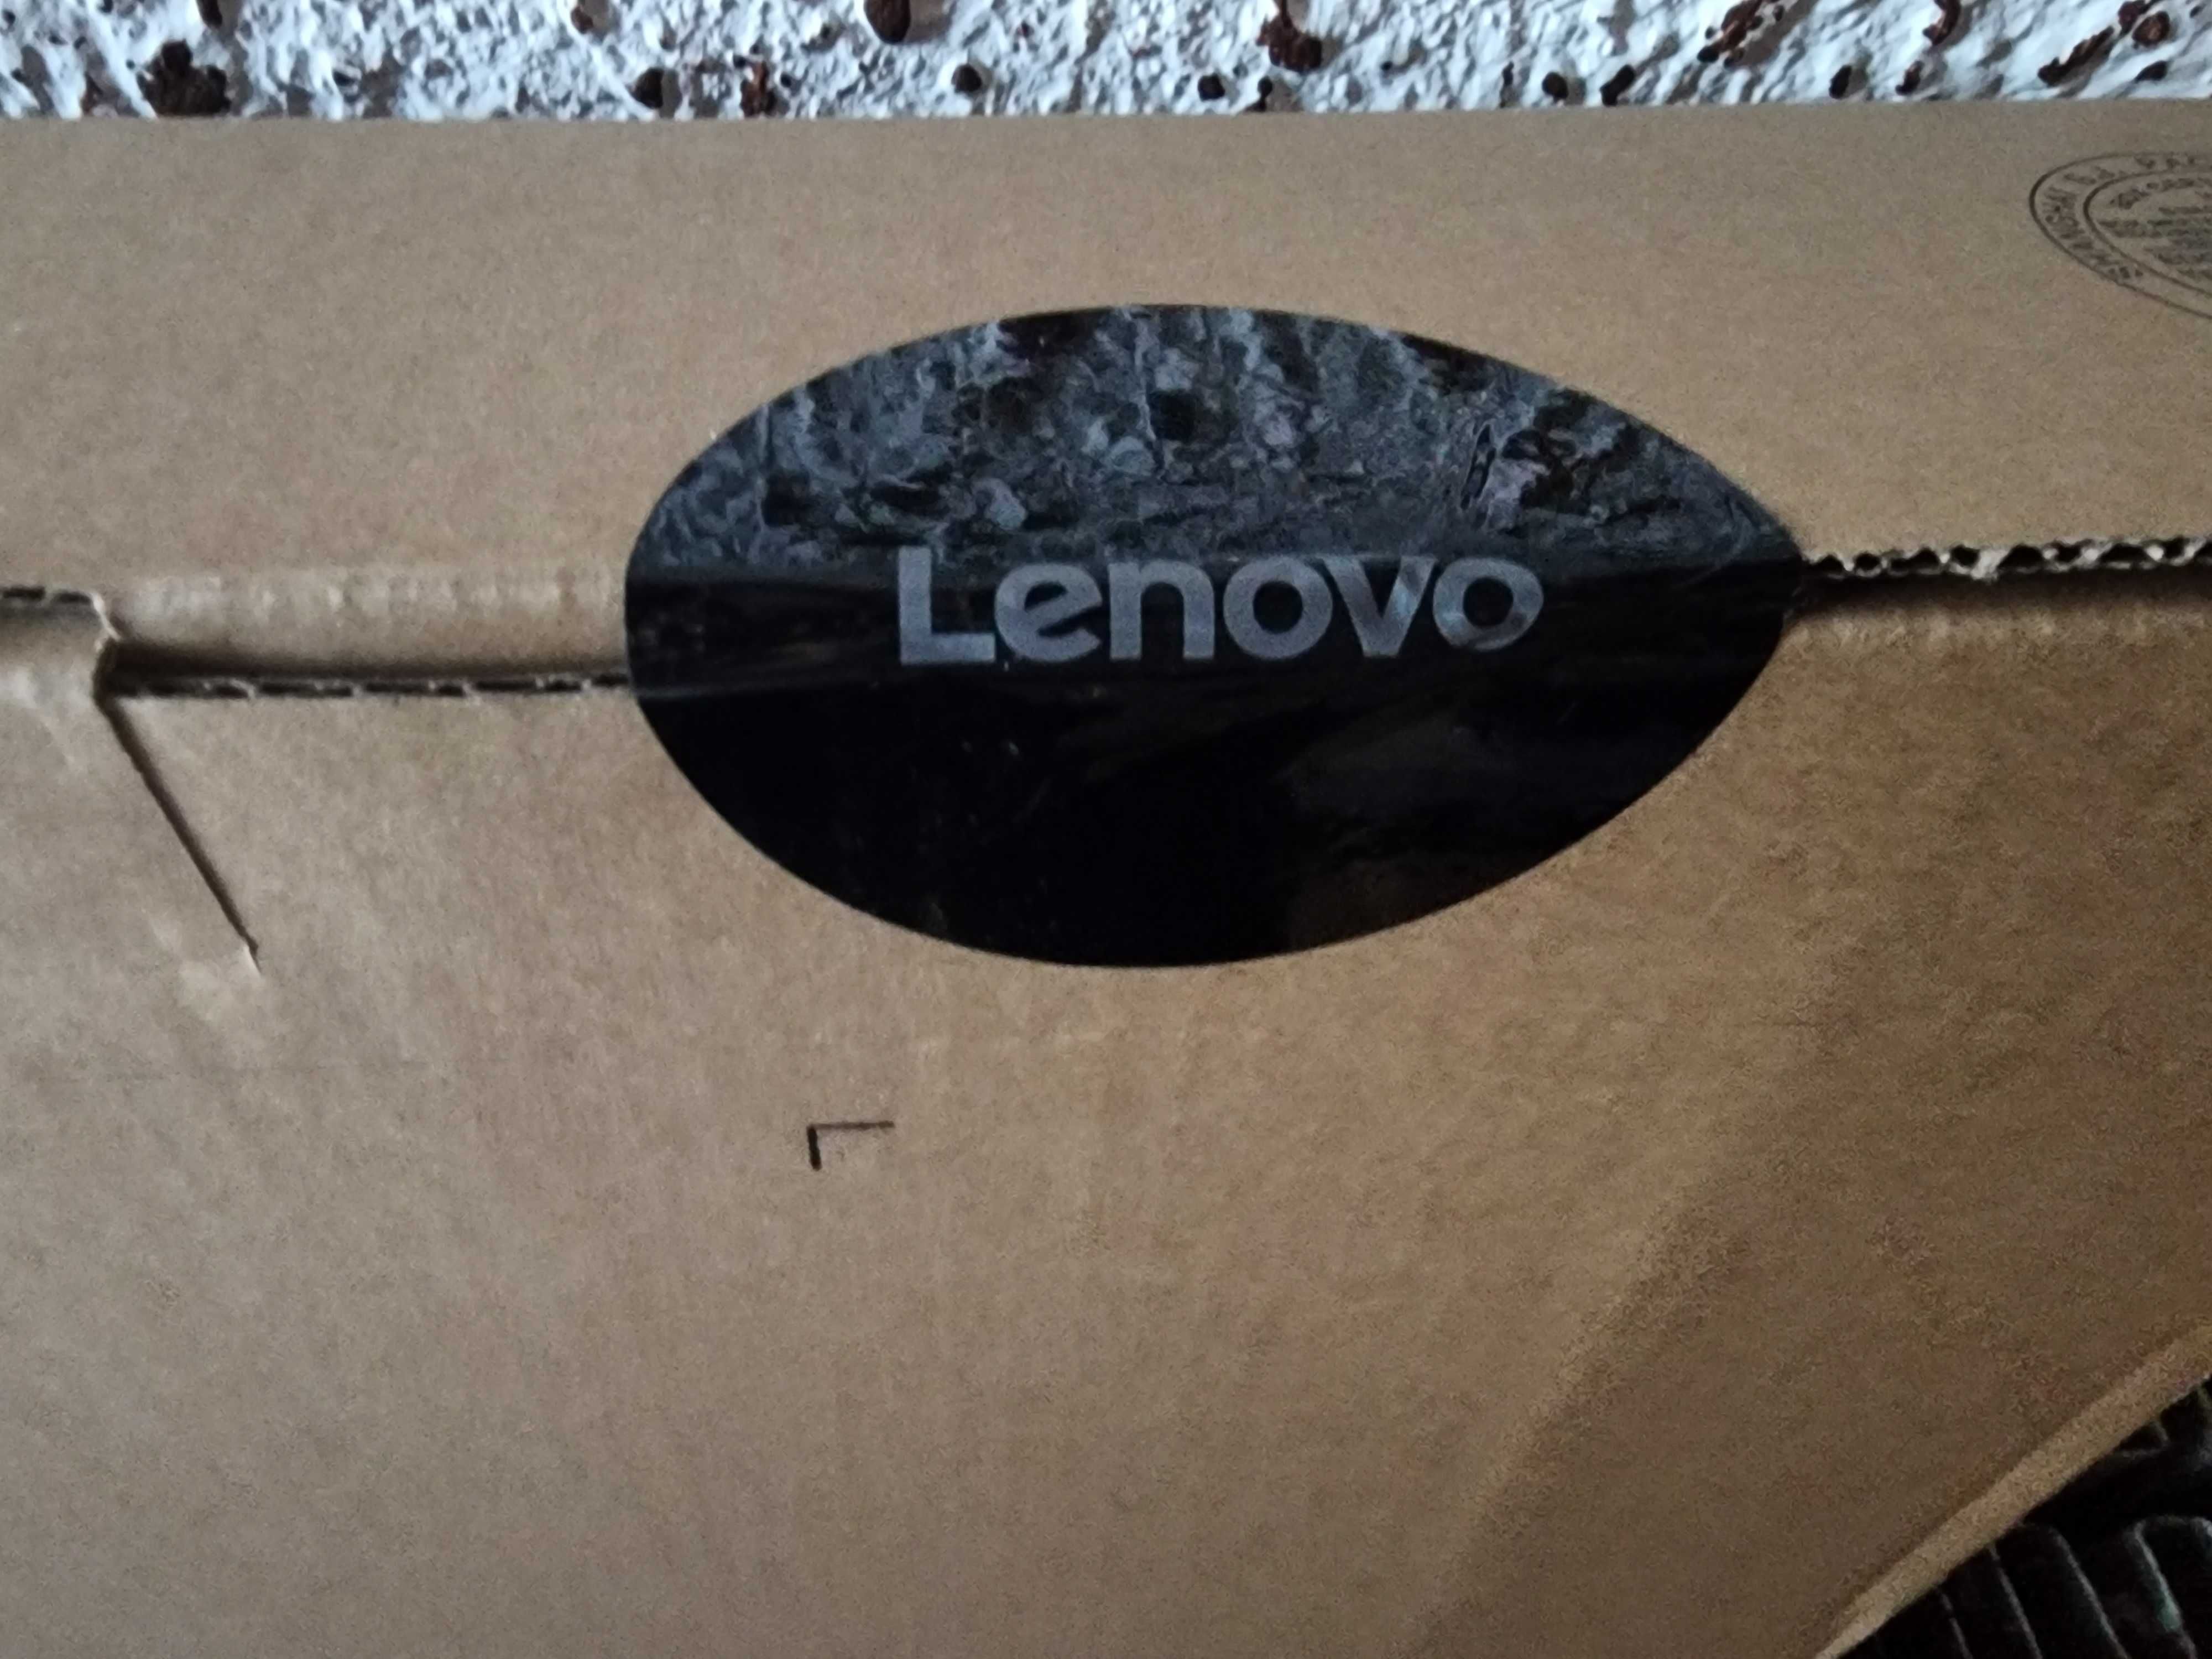 GAMING Lenovo Ideapad 5i НОВ NVIDIA G force